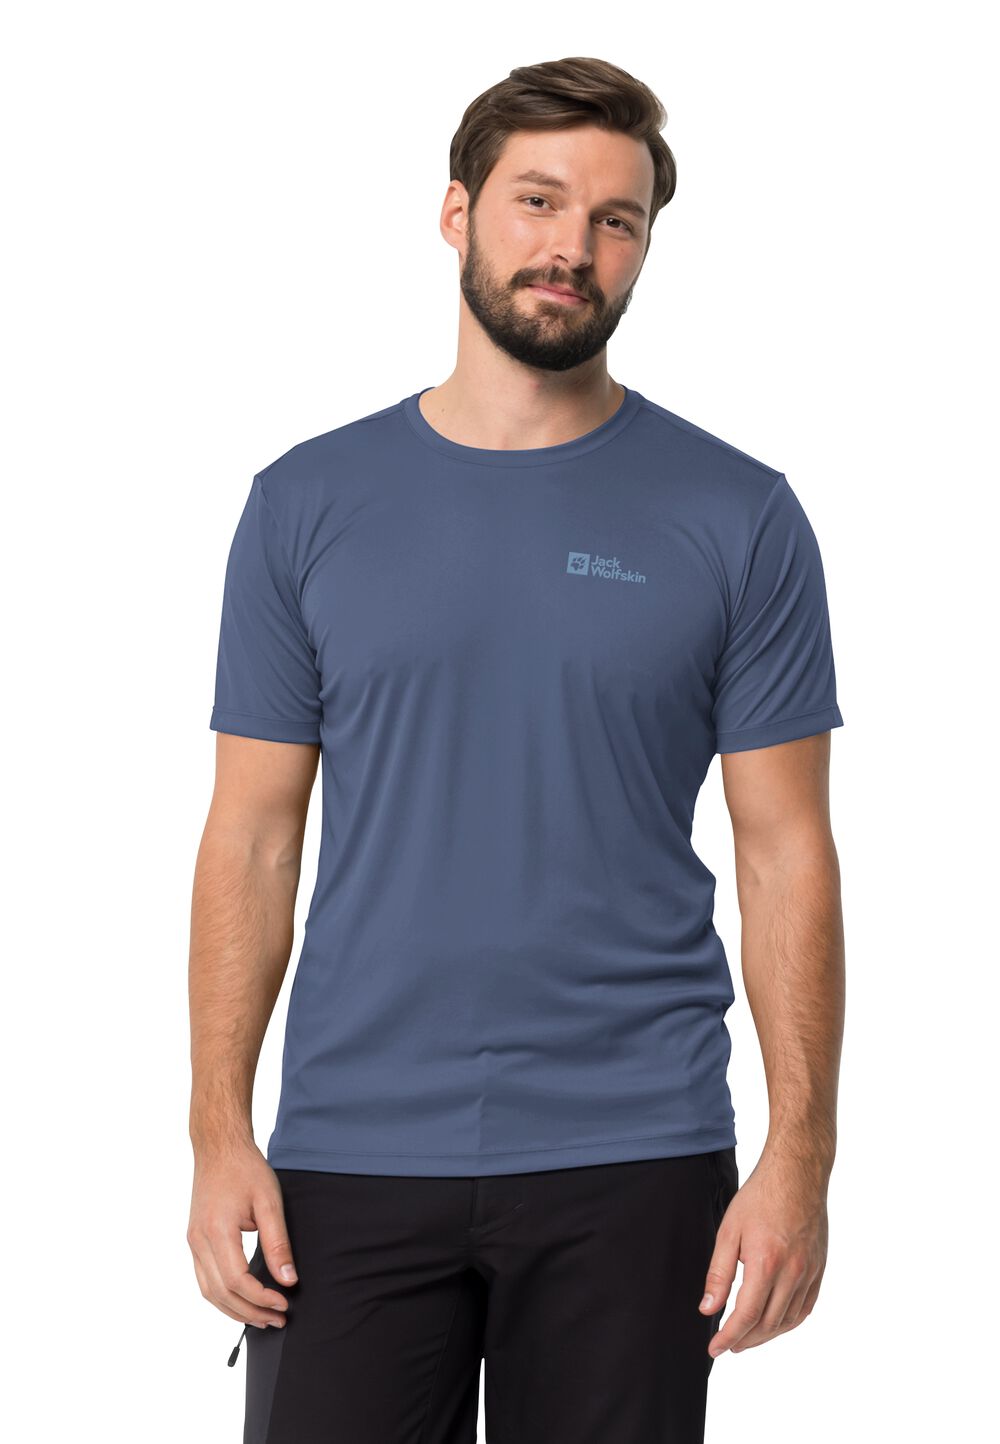 Jack Wolfskin Tech T-Shirt Men Functioneel shirt Heren XL evening sky evening sky